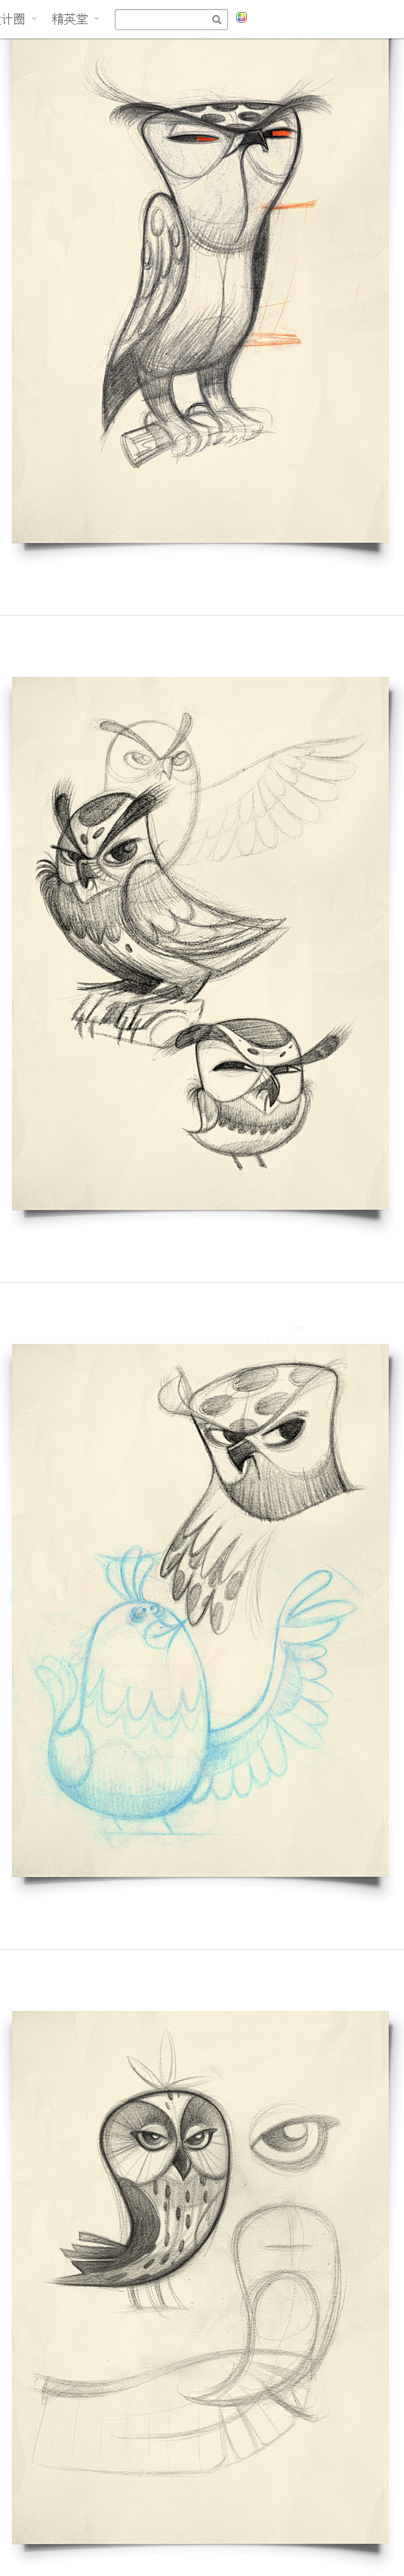 Owls猫头鹰插画设计 DESIGN设计...